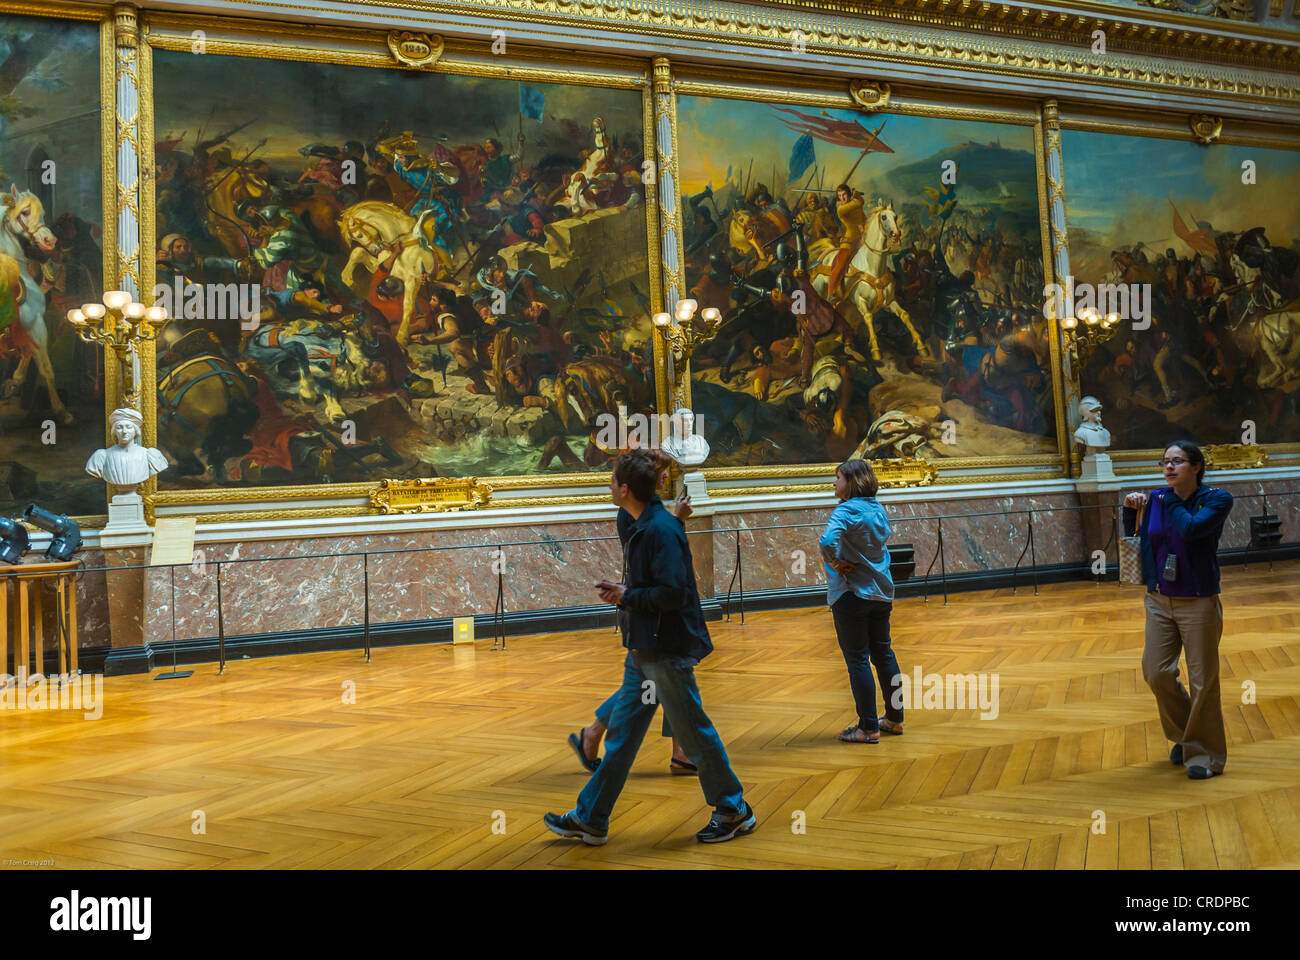 París, Francia, los turistas que visitan galerías de arte, la historia francesa pinturas, dentro del 'Chateau de Versailles', castillo francés Foto de stock